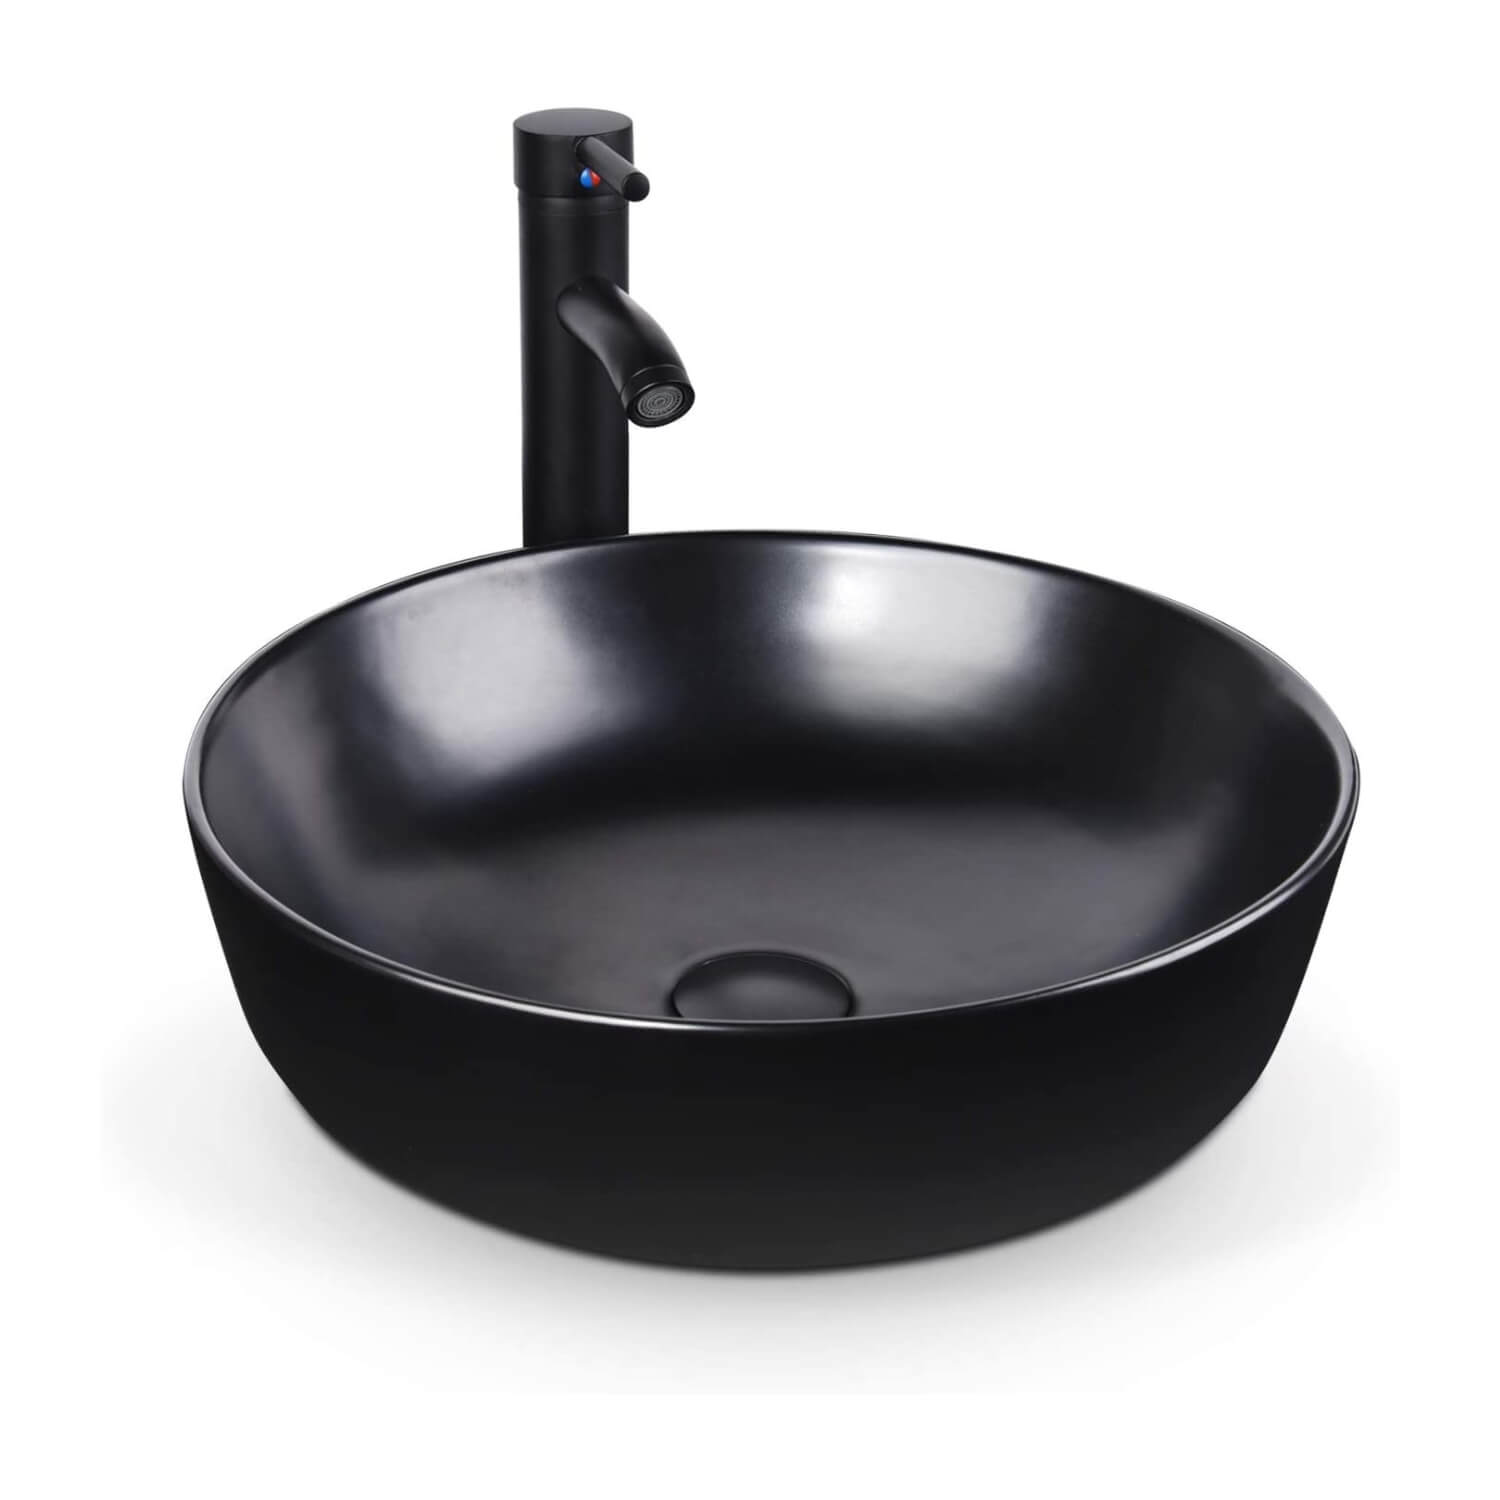 Elecwish black ceramic round sink